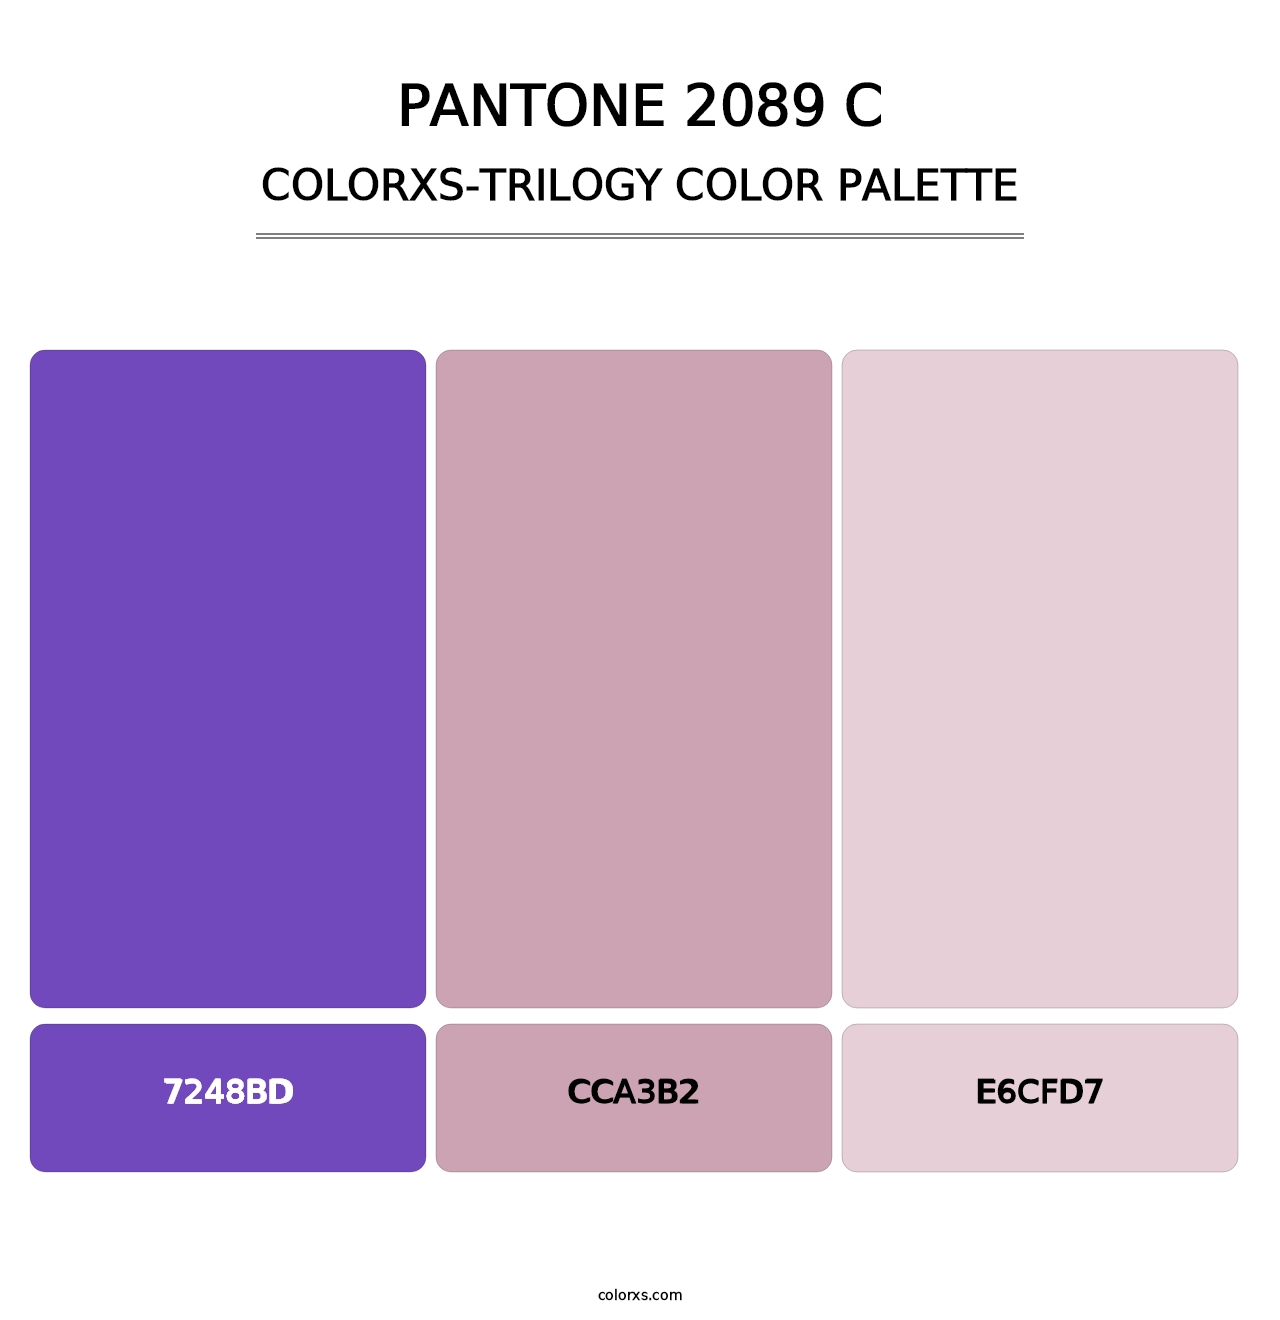 PANTONE 2089 C - Colorxs Trilogy Palette